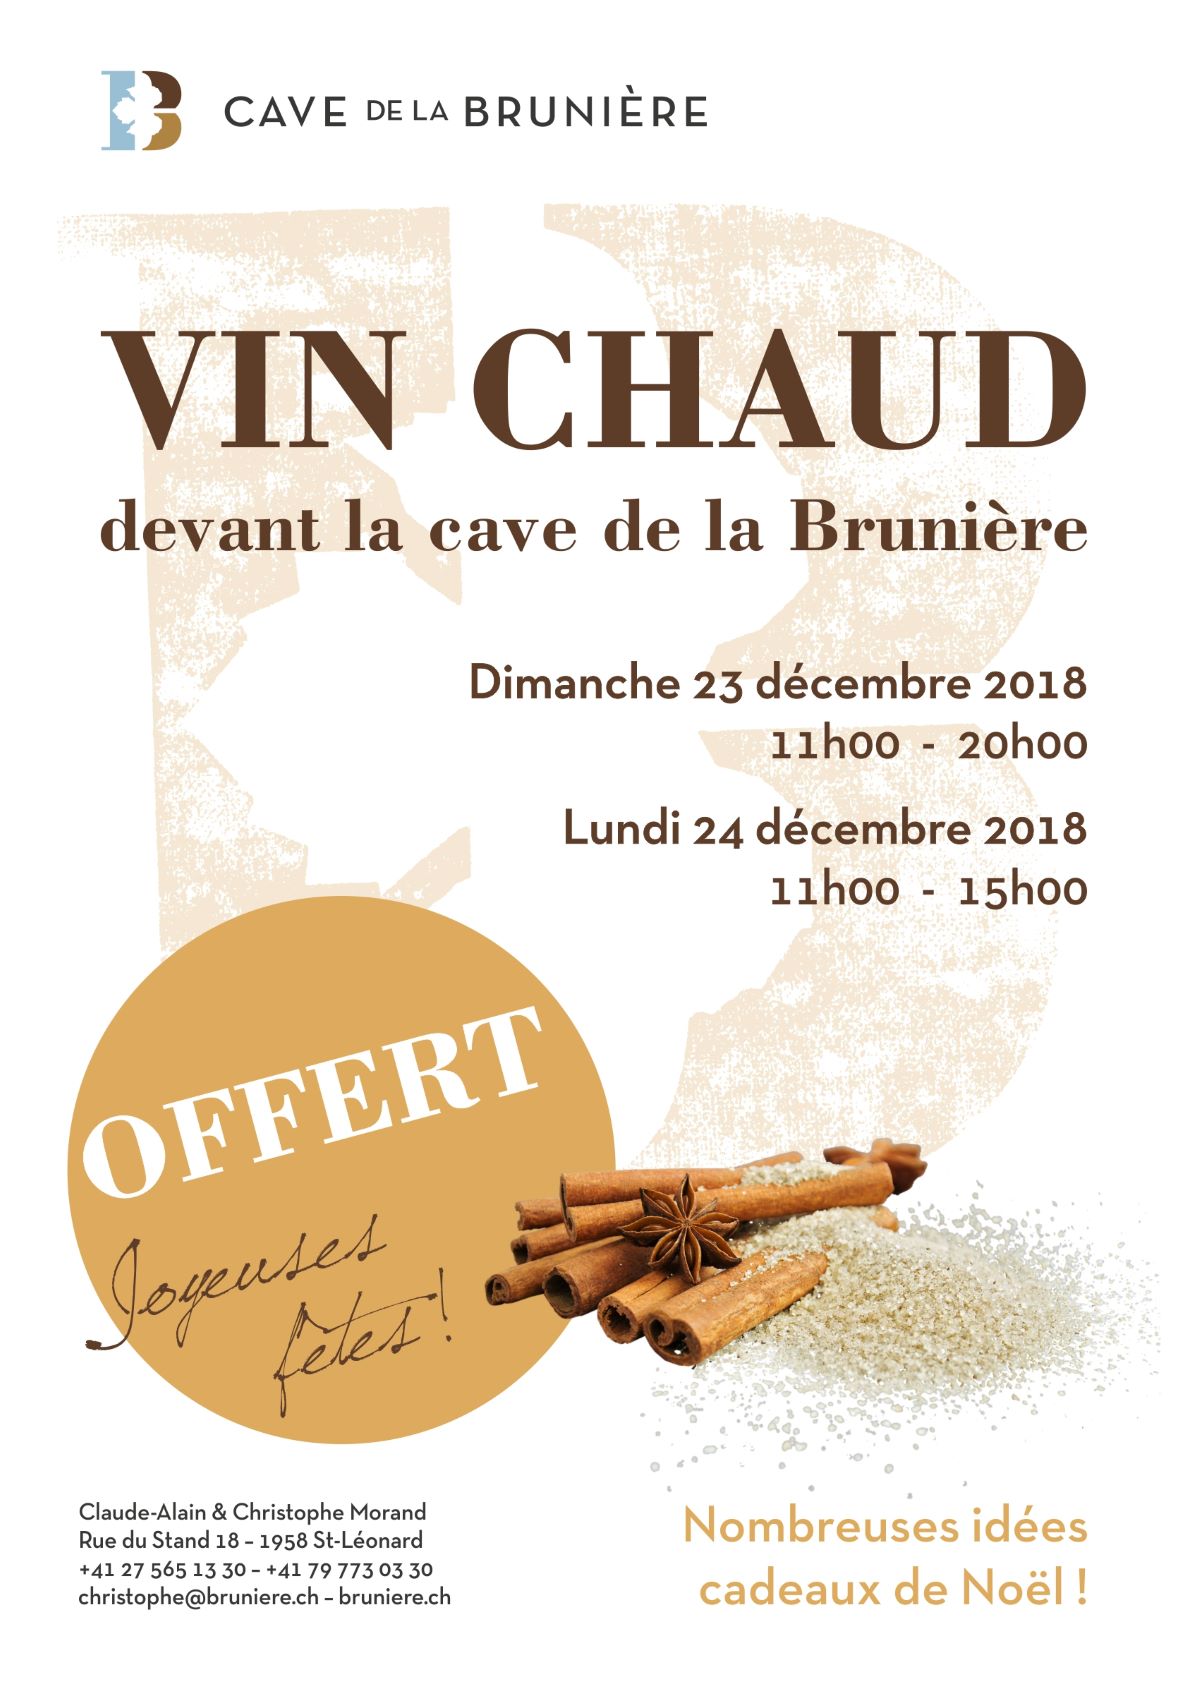 Vin Chaud Bruniere 2018